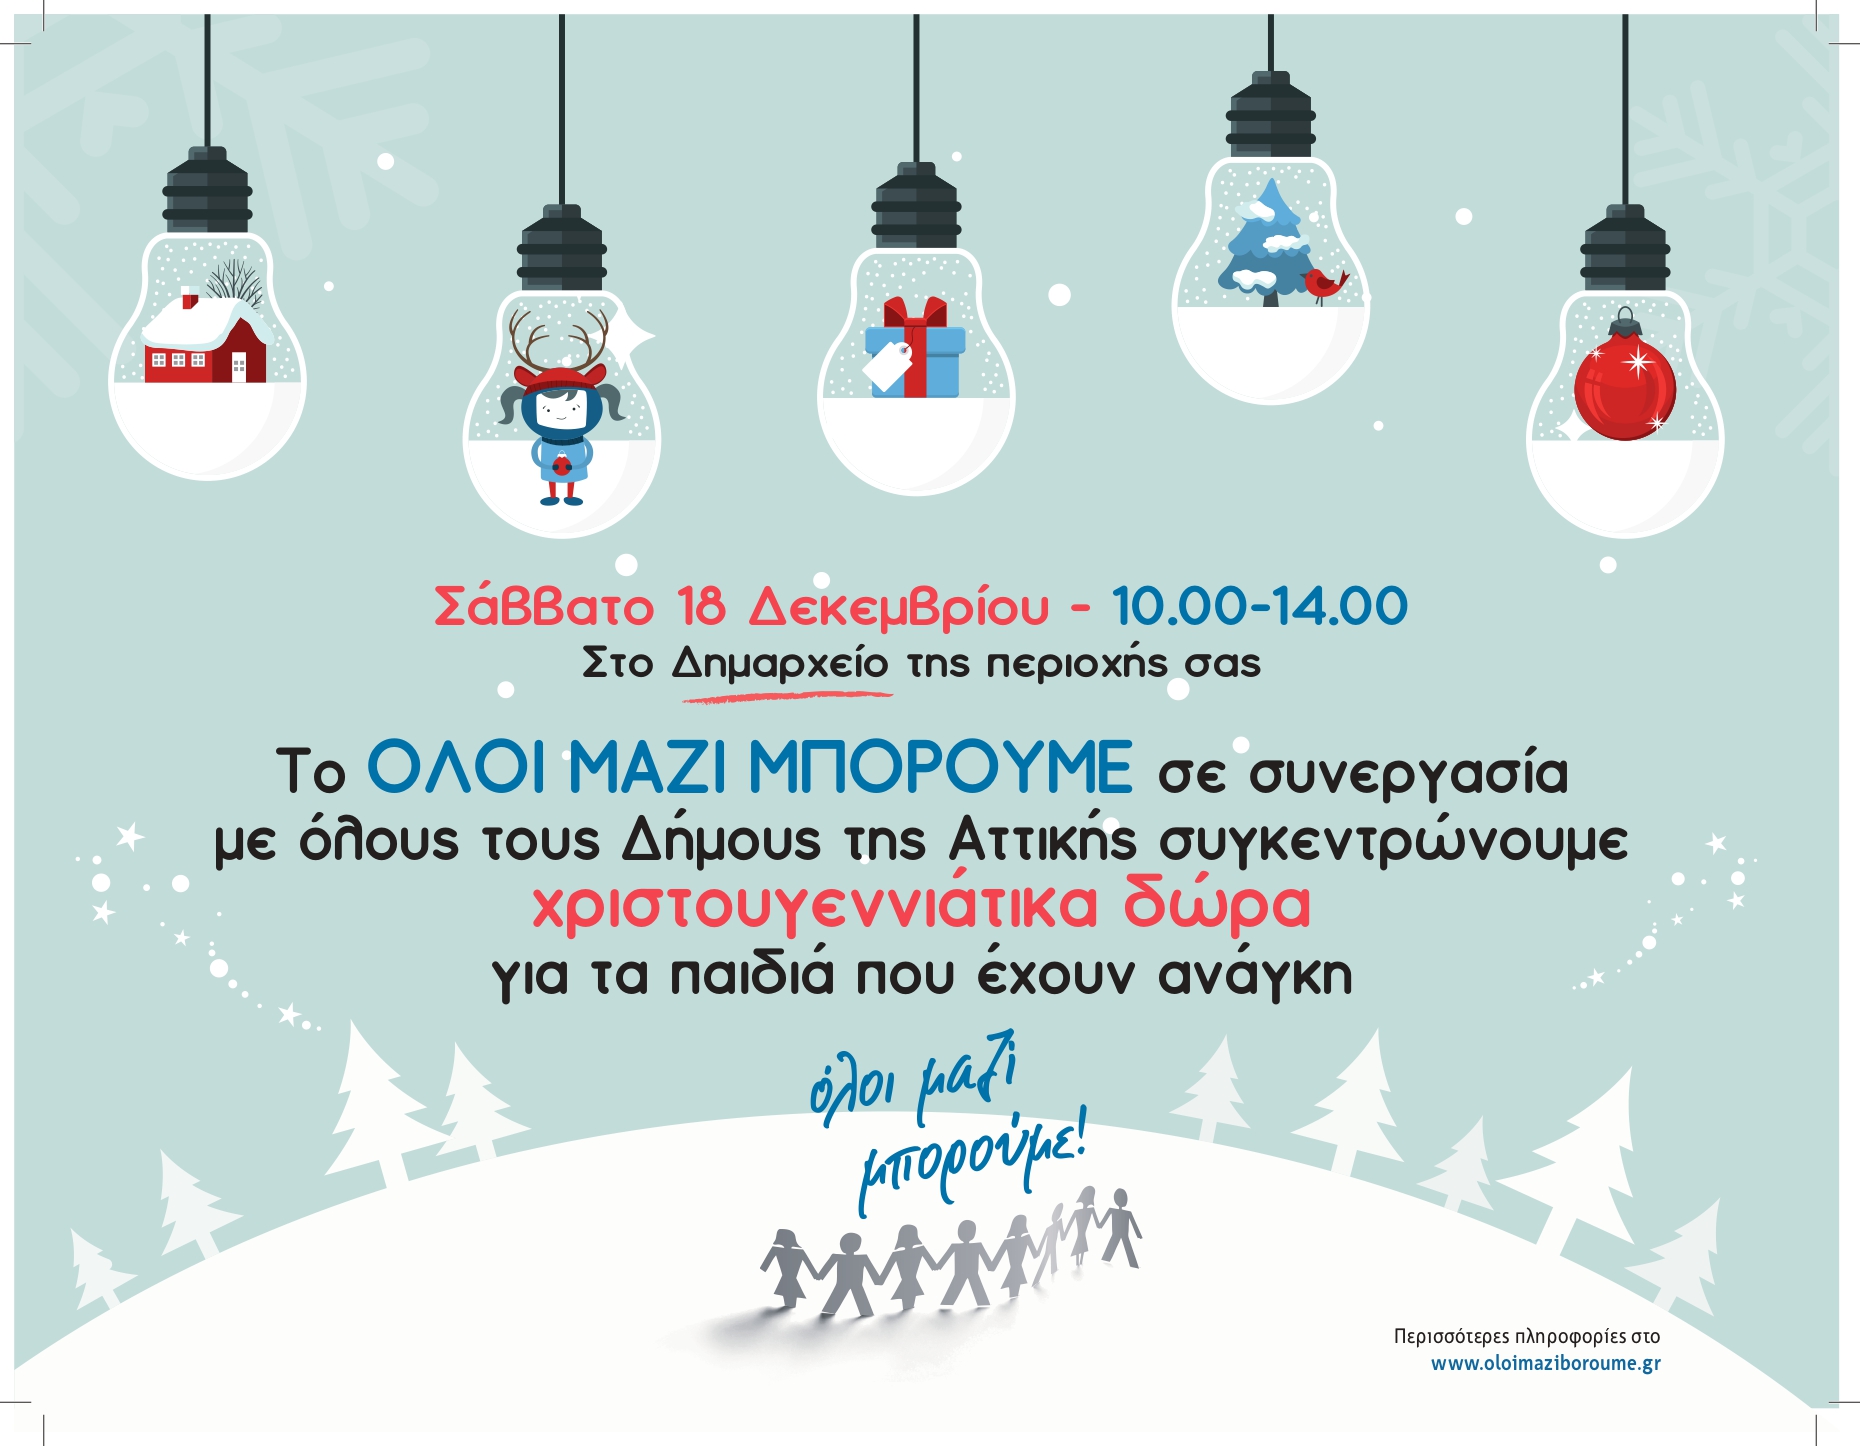 ΟΛΟΙ ΜΑΖΙ ΜΠΟΡΟΥΜΕ: Συγκέντρωση Χριστουγεννιάτικων δώρων σε όλους τους Δήμους της Αττικής το Σάββατο 18 Δεκεμβρίου